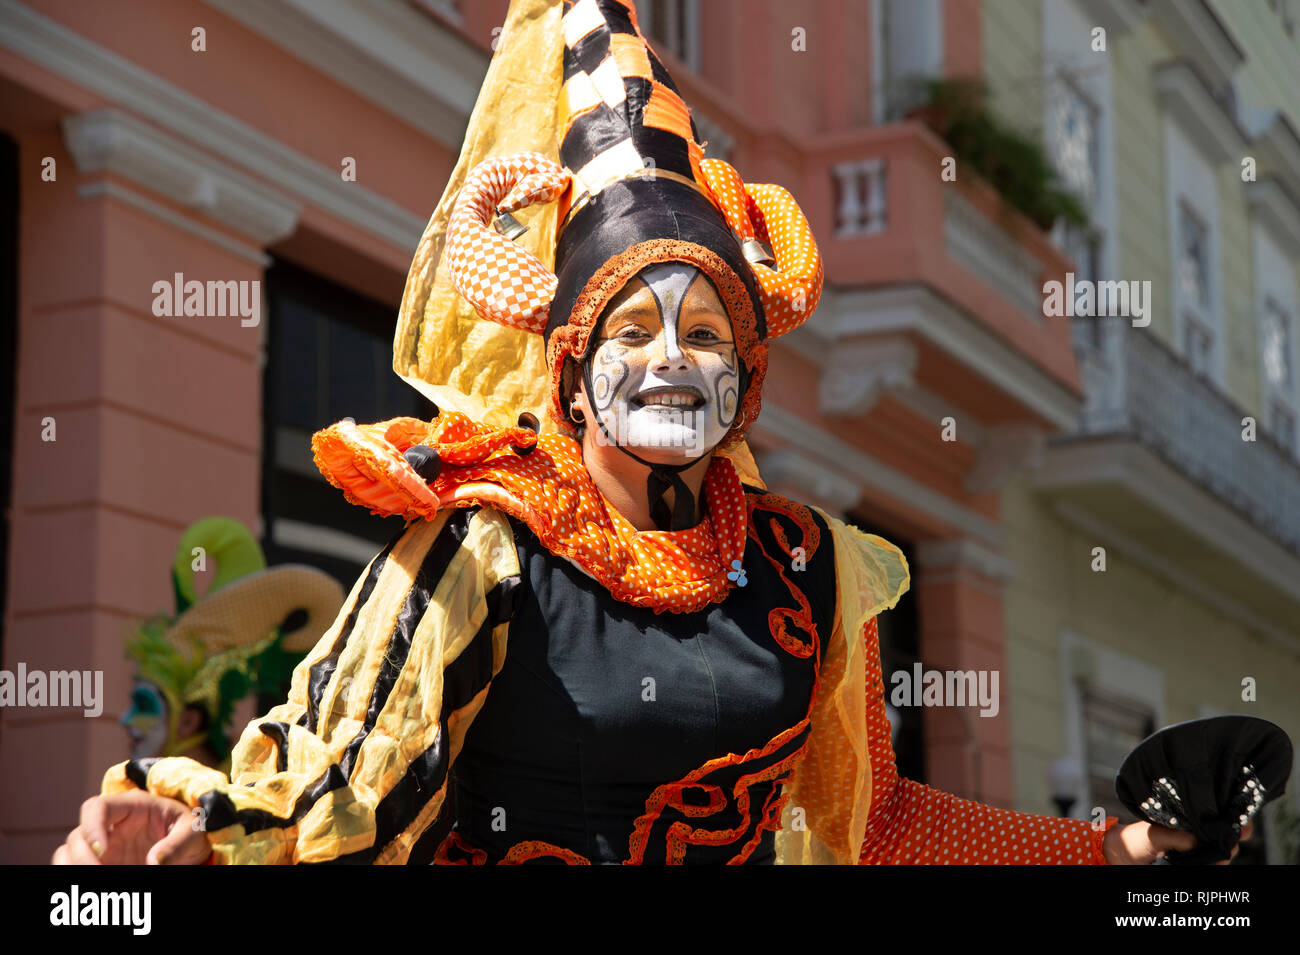 Eine glücklich lächelnde Street Performer in farbenfroher Tracht unterhält die Massen auf den Straßen von Havanna Vieja Kuba Stockfoto